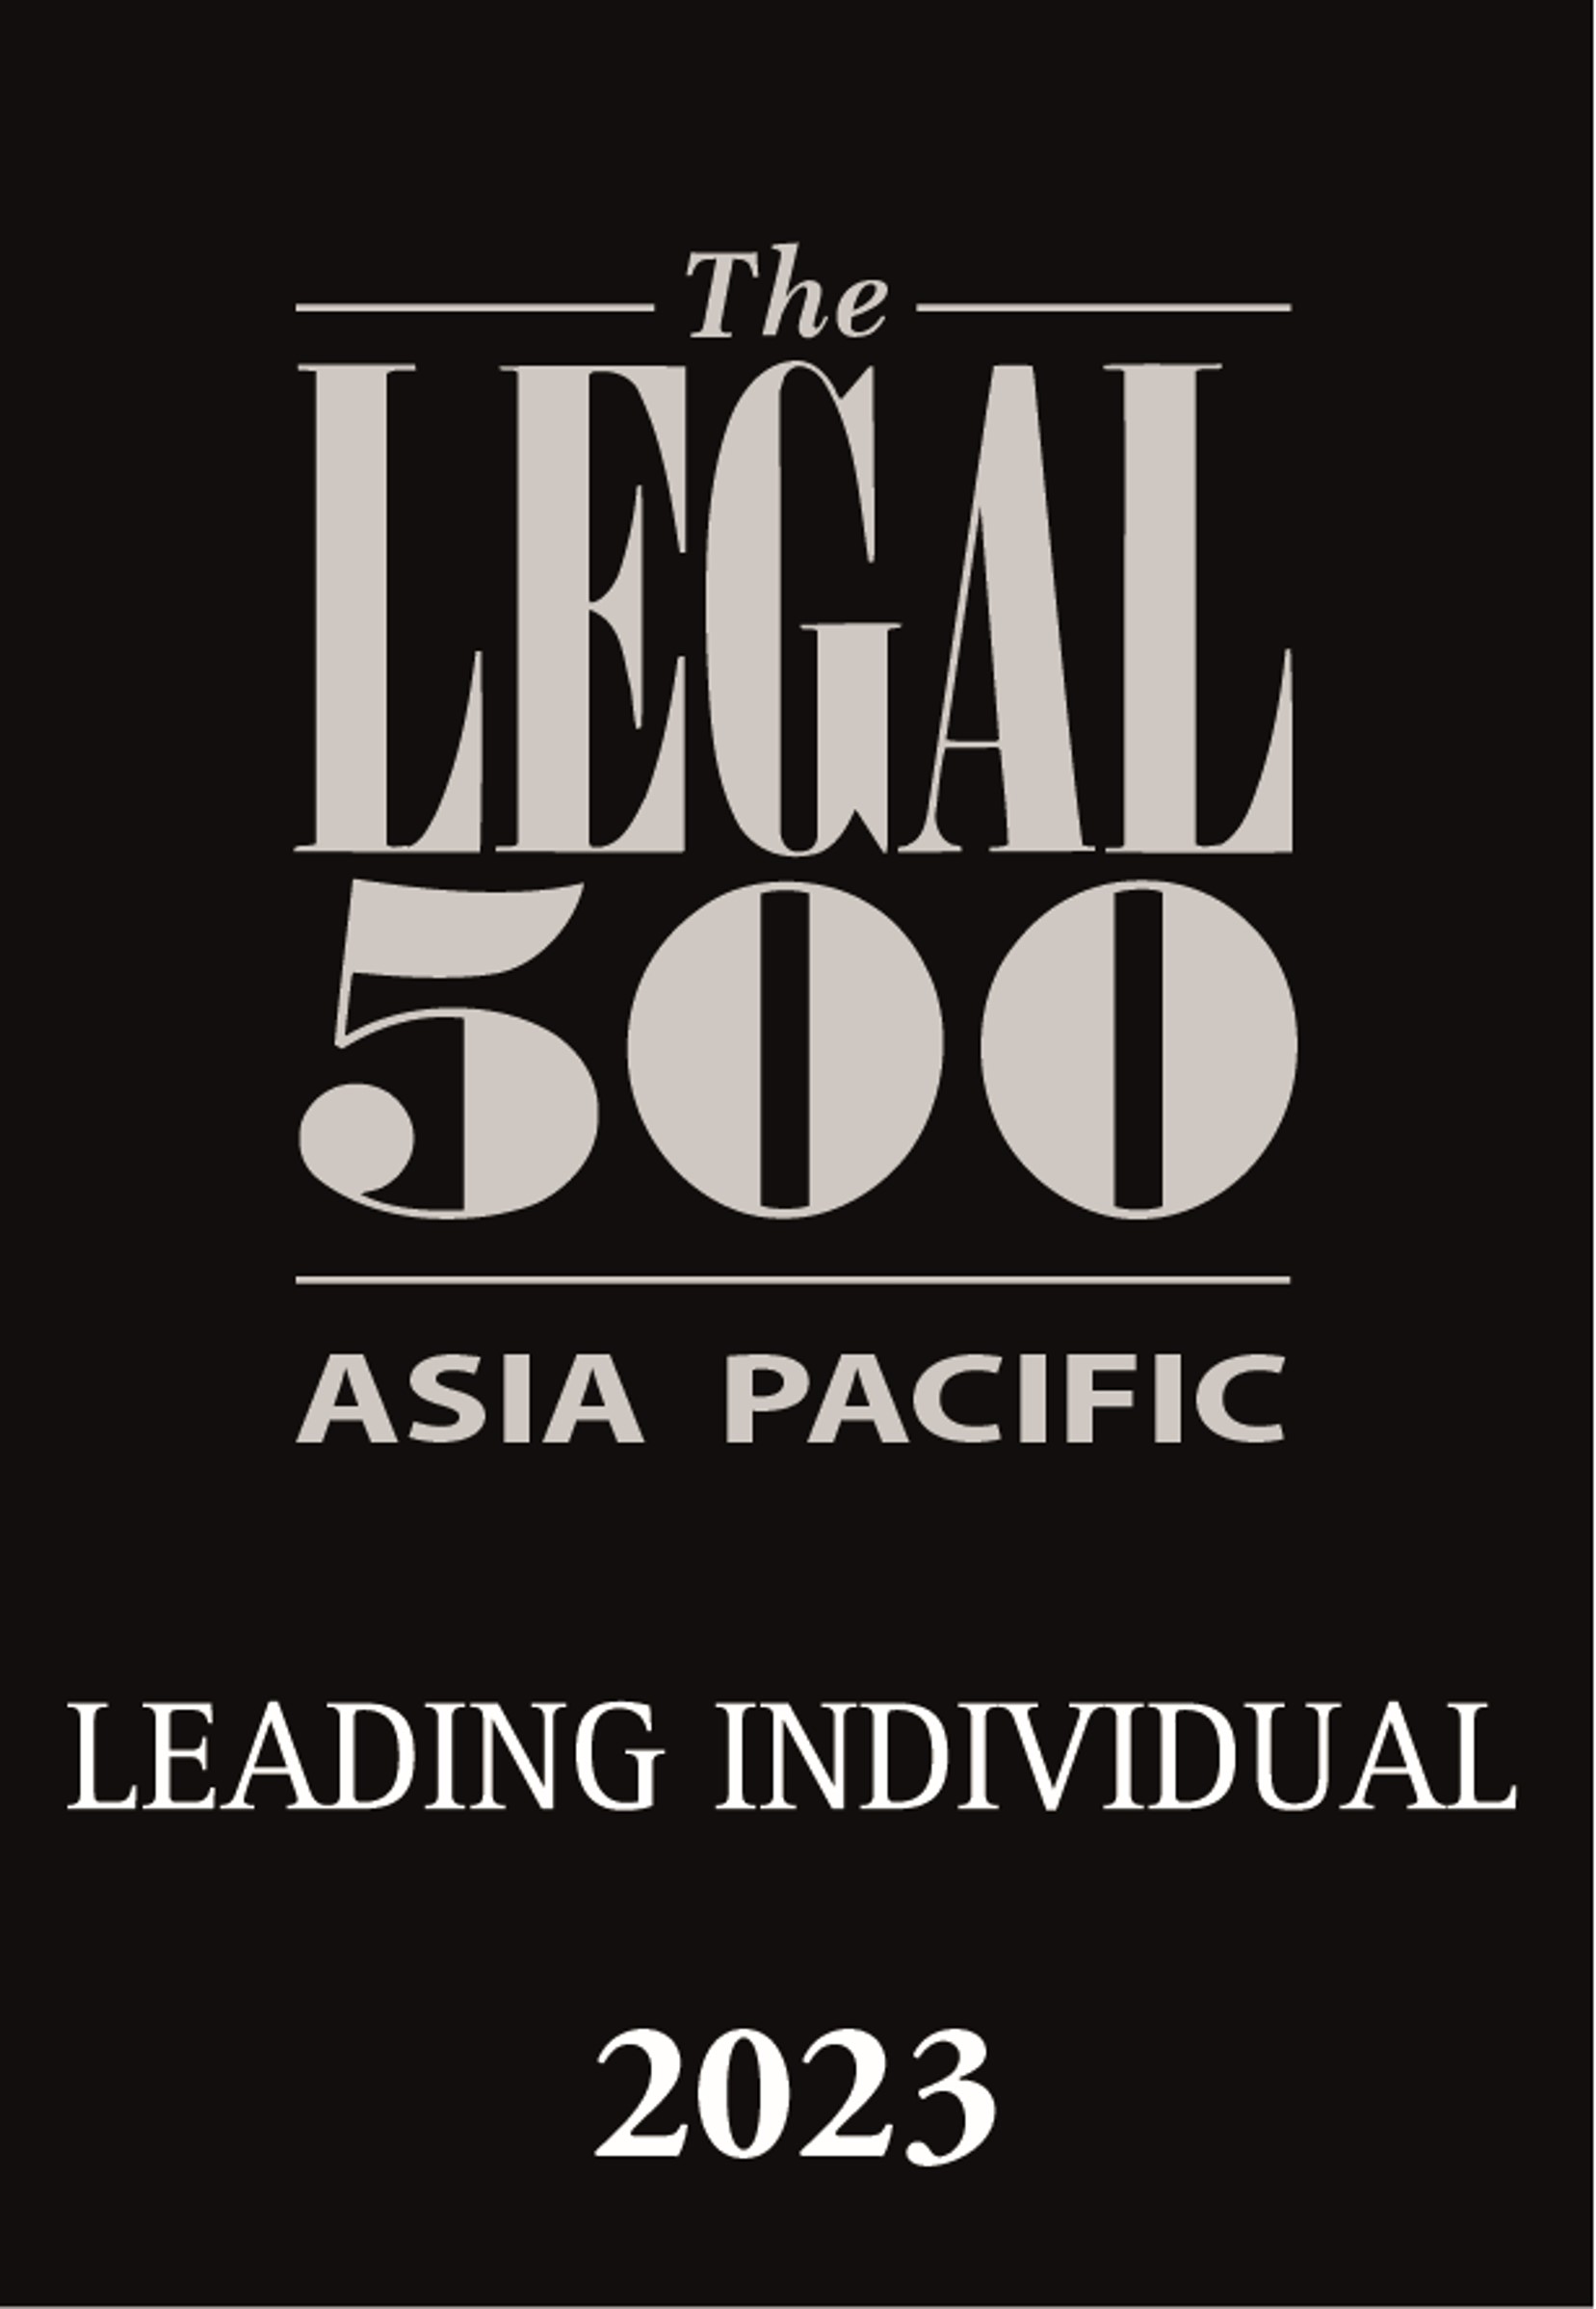 商业、企业及并购︰独立的香港律师事务所, 领先律师, 朱静文律师, 2023